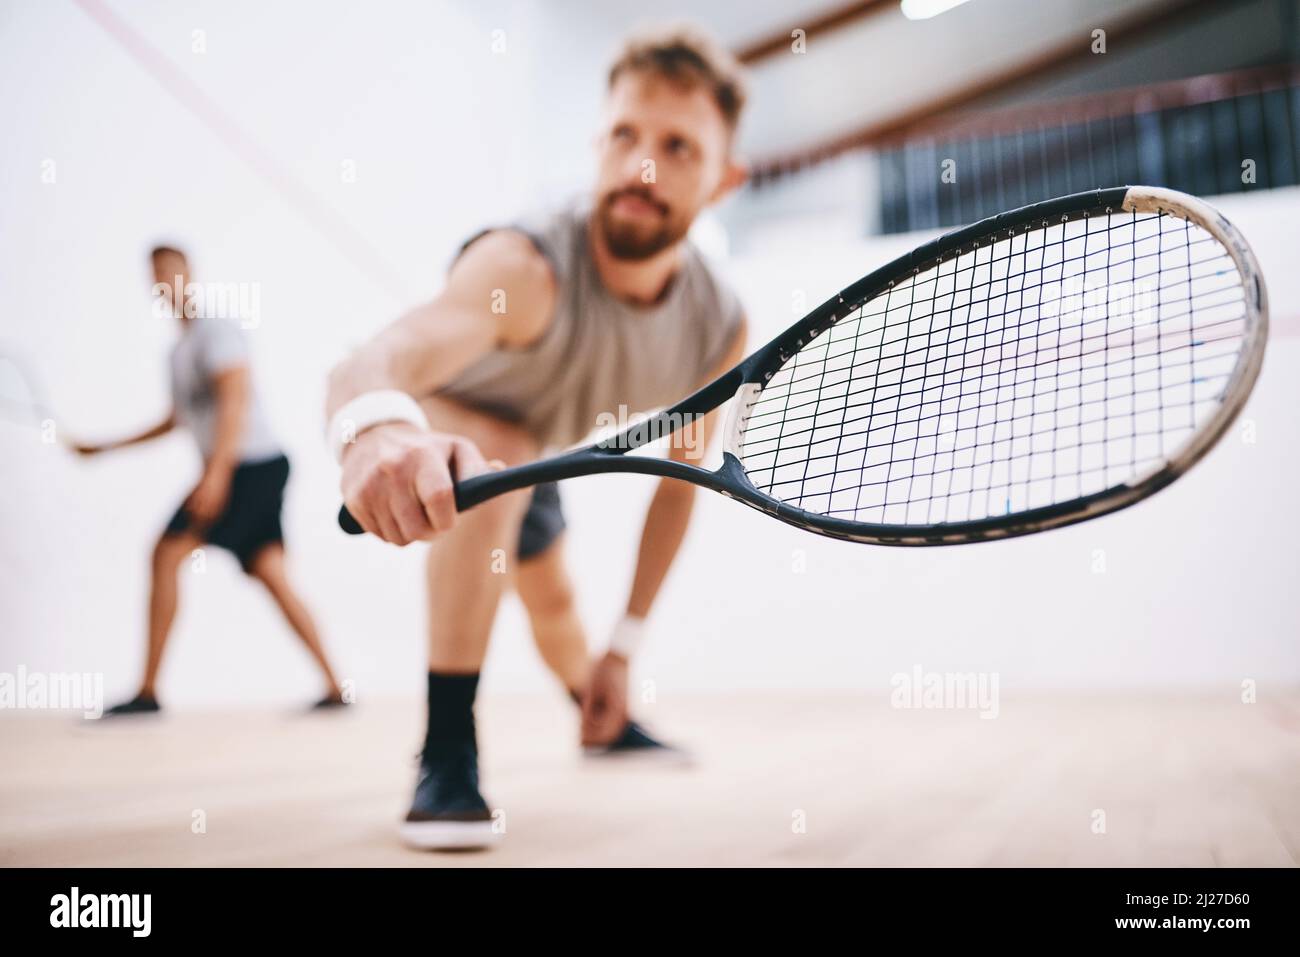 Nehmen Sie Ihre Augen nicht eine Sekunde lang vom Ball. Aufnahme von zwei jungen Männern, die ein Squash-Spiel spielen. Stockfoto